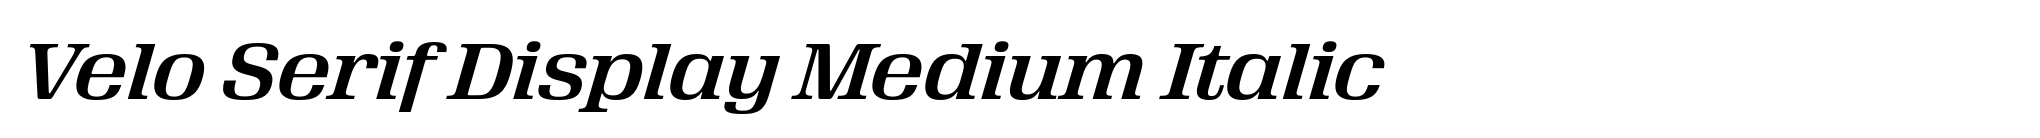 Velo Serif Display Medium Italic image